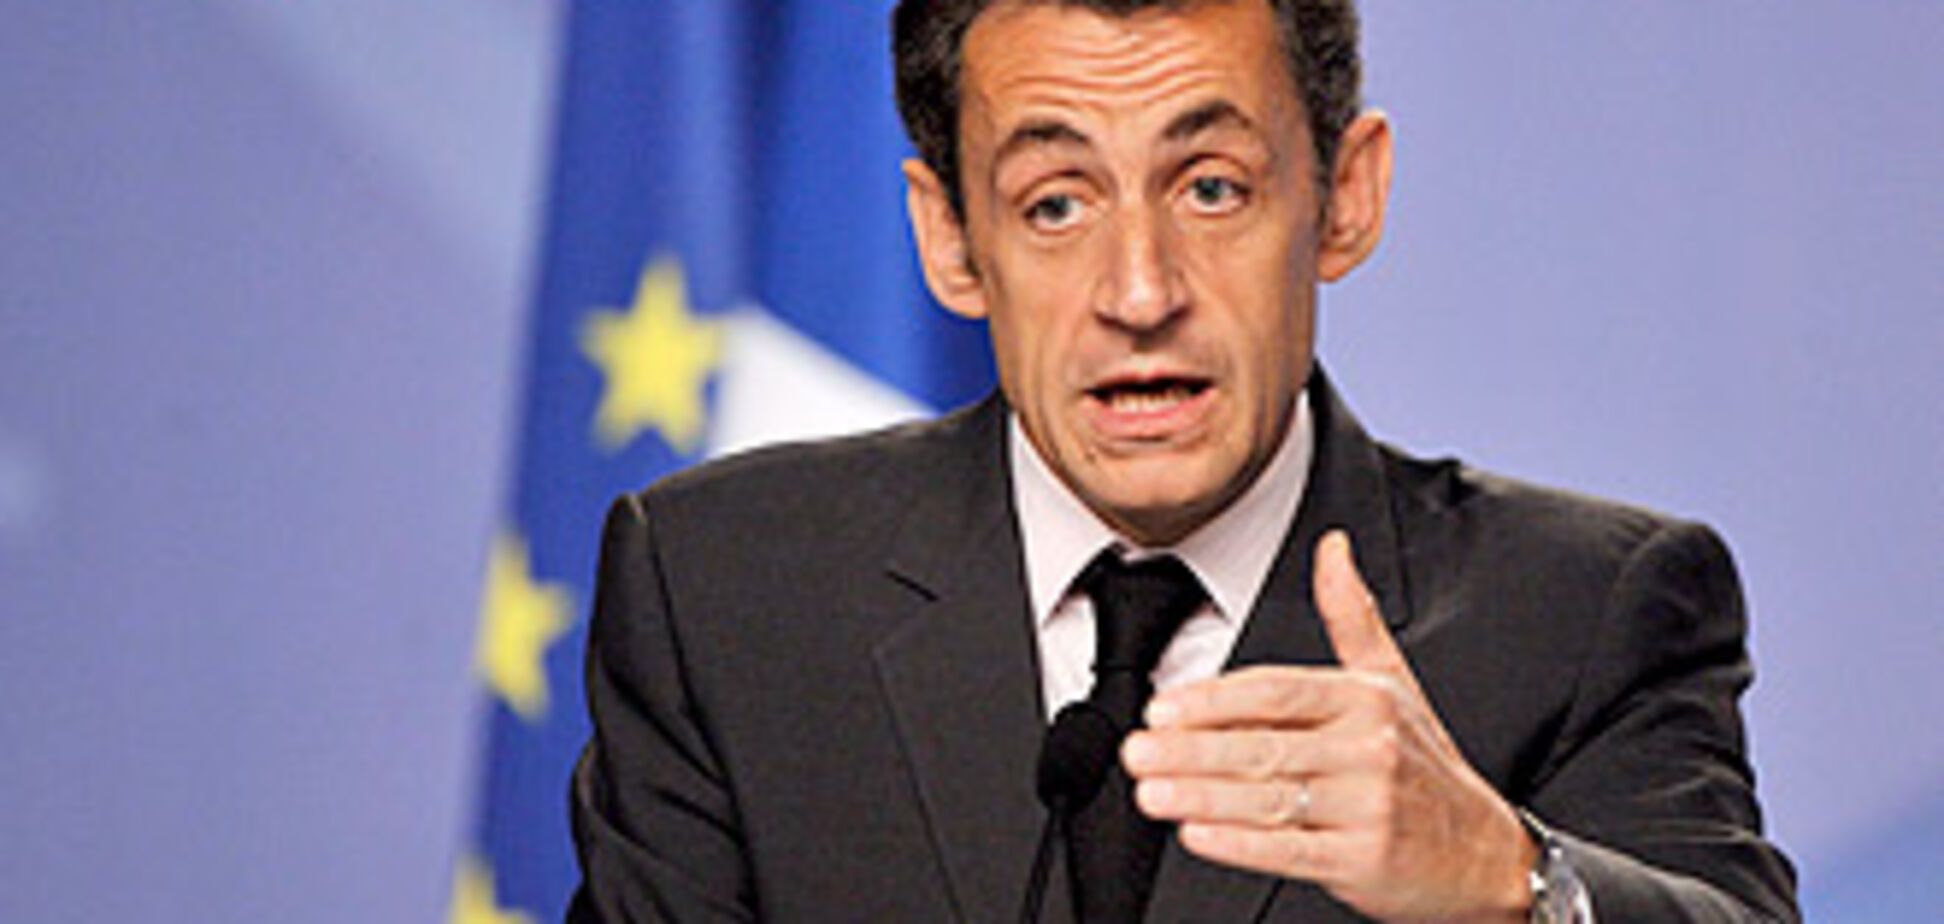 Саркози высказал всё, что думает о мировых лидерах